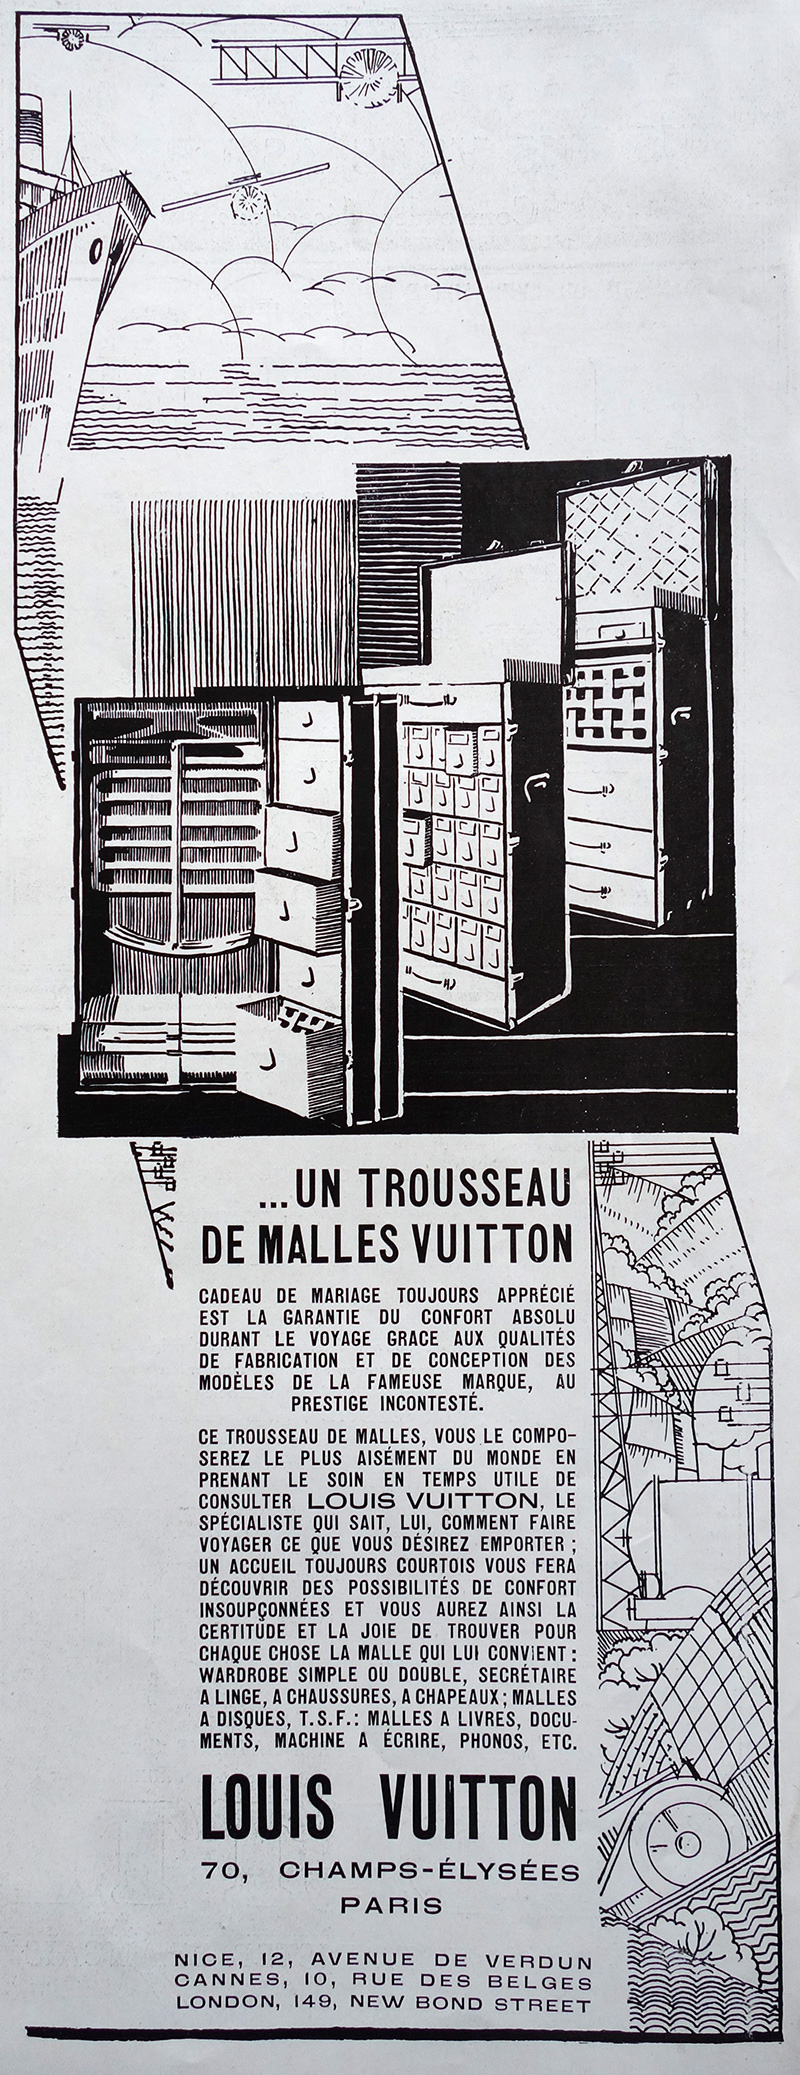 PUBLICITE ANCIENNE - Malles Louis Vuitton © L'Illustration - 1920-1930